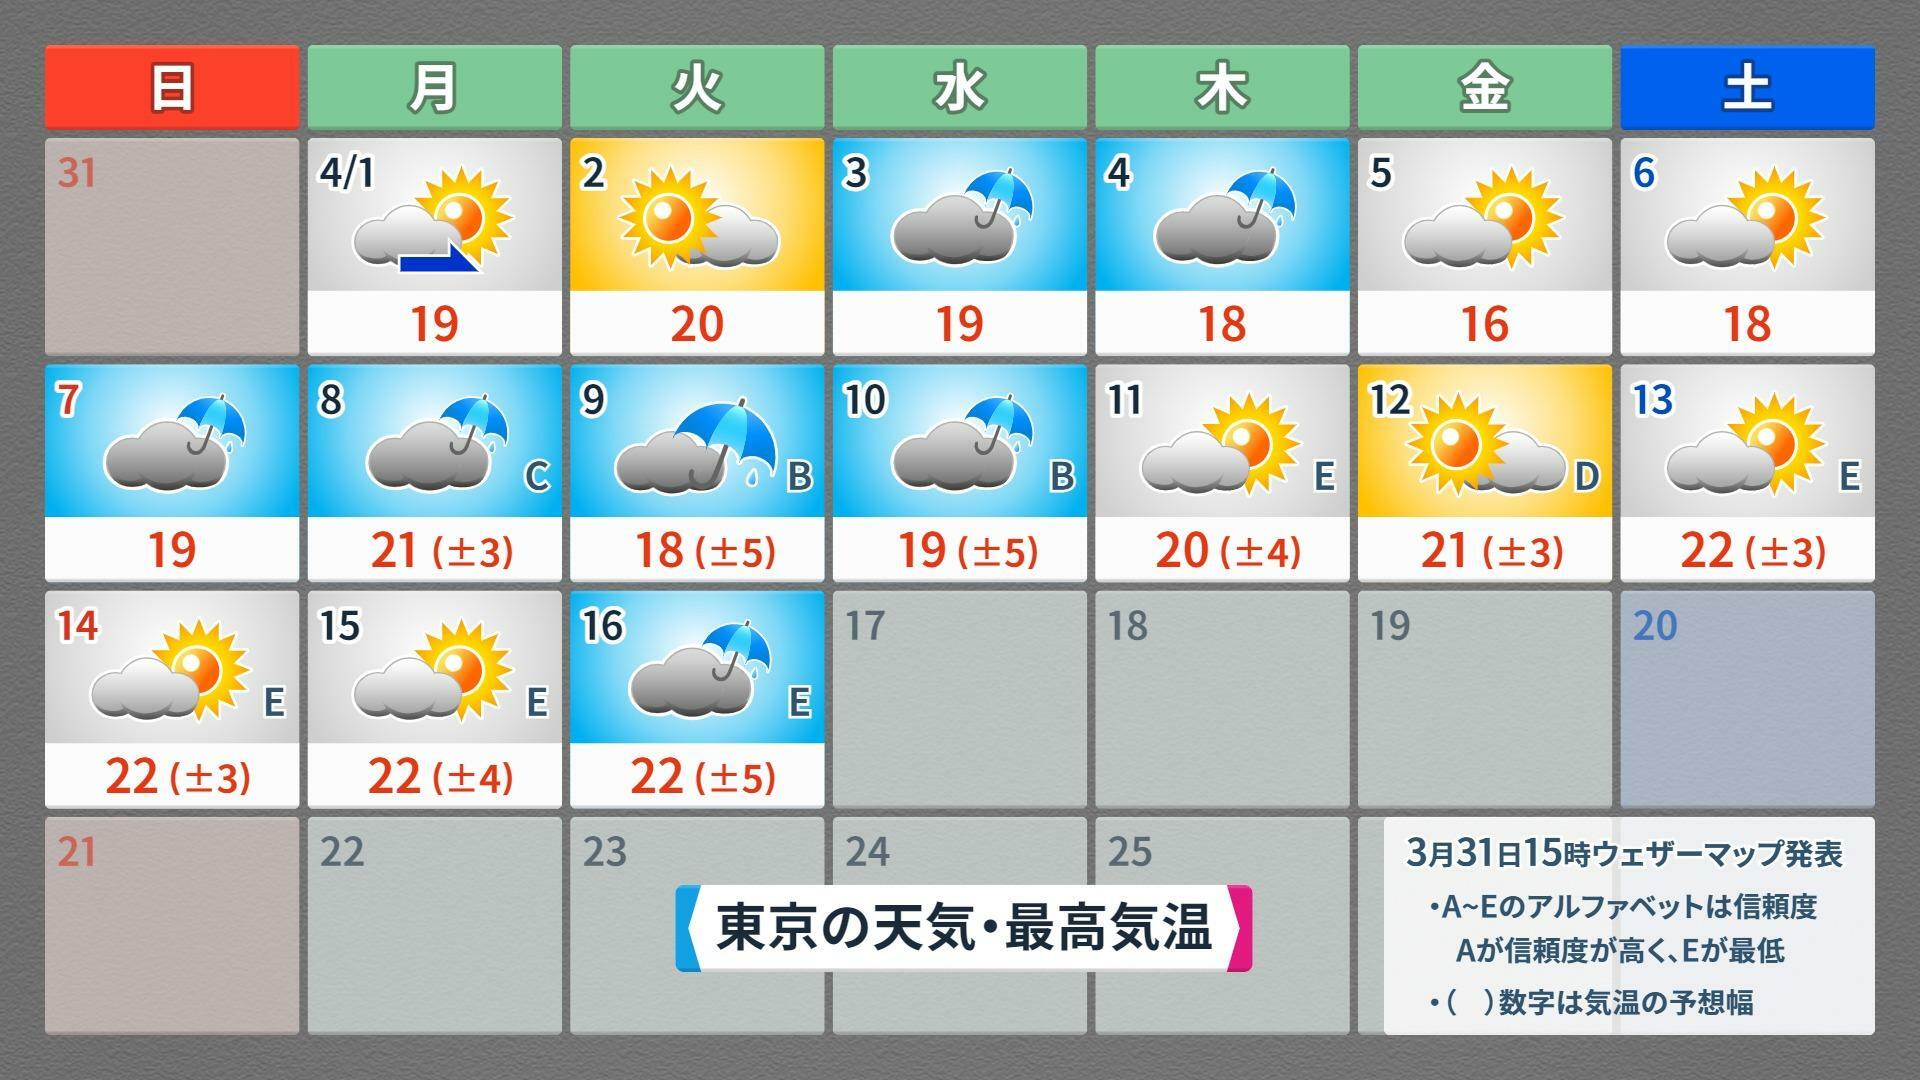 【東京の16日間予報（4/1～4/16）】4/1～4/7は気象庁予報、4/8～4/16はウェザーマップ予報、ウェザーマップ作画